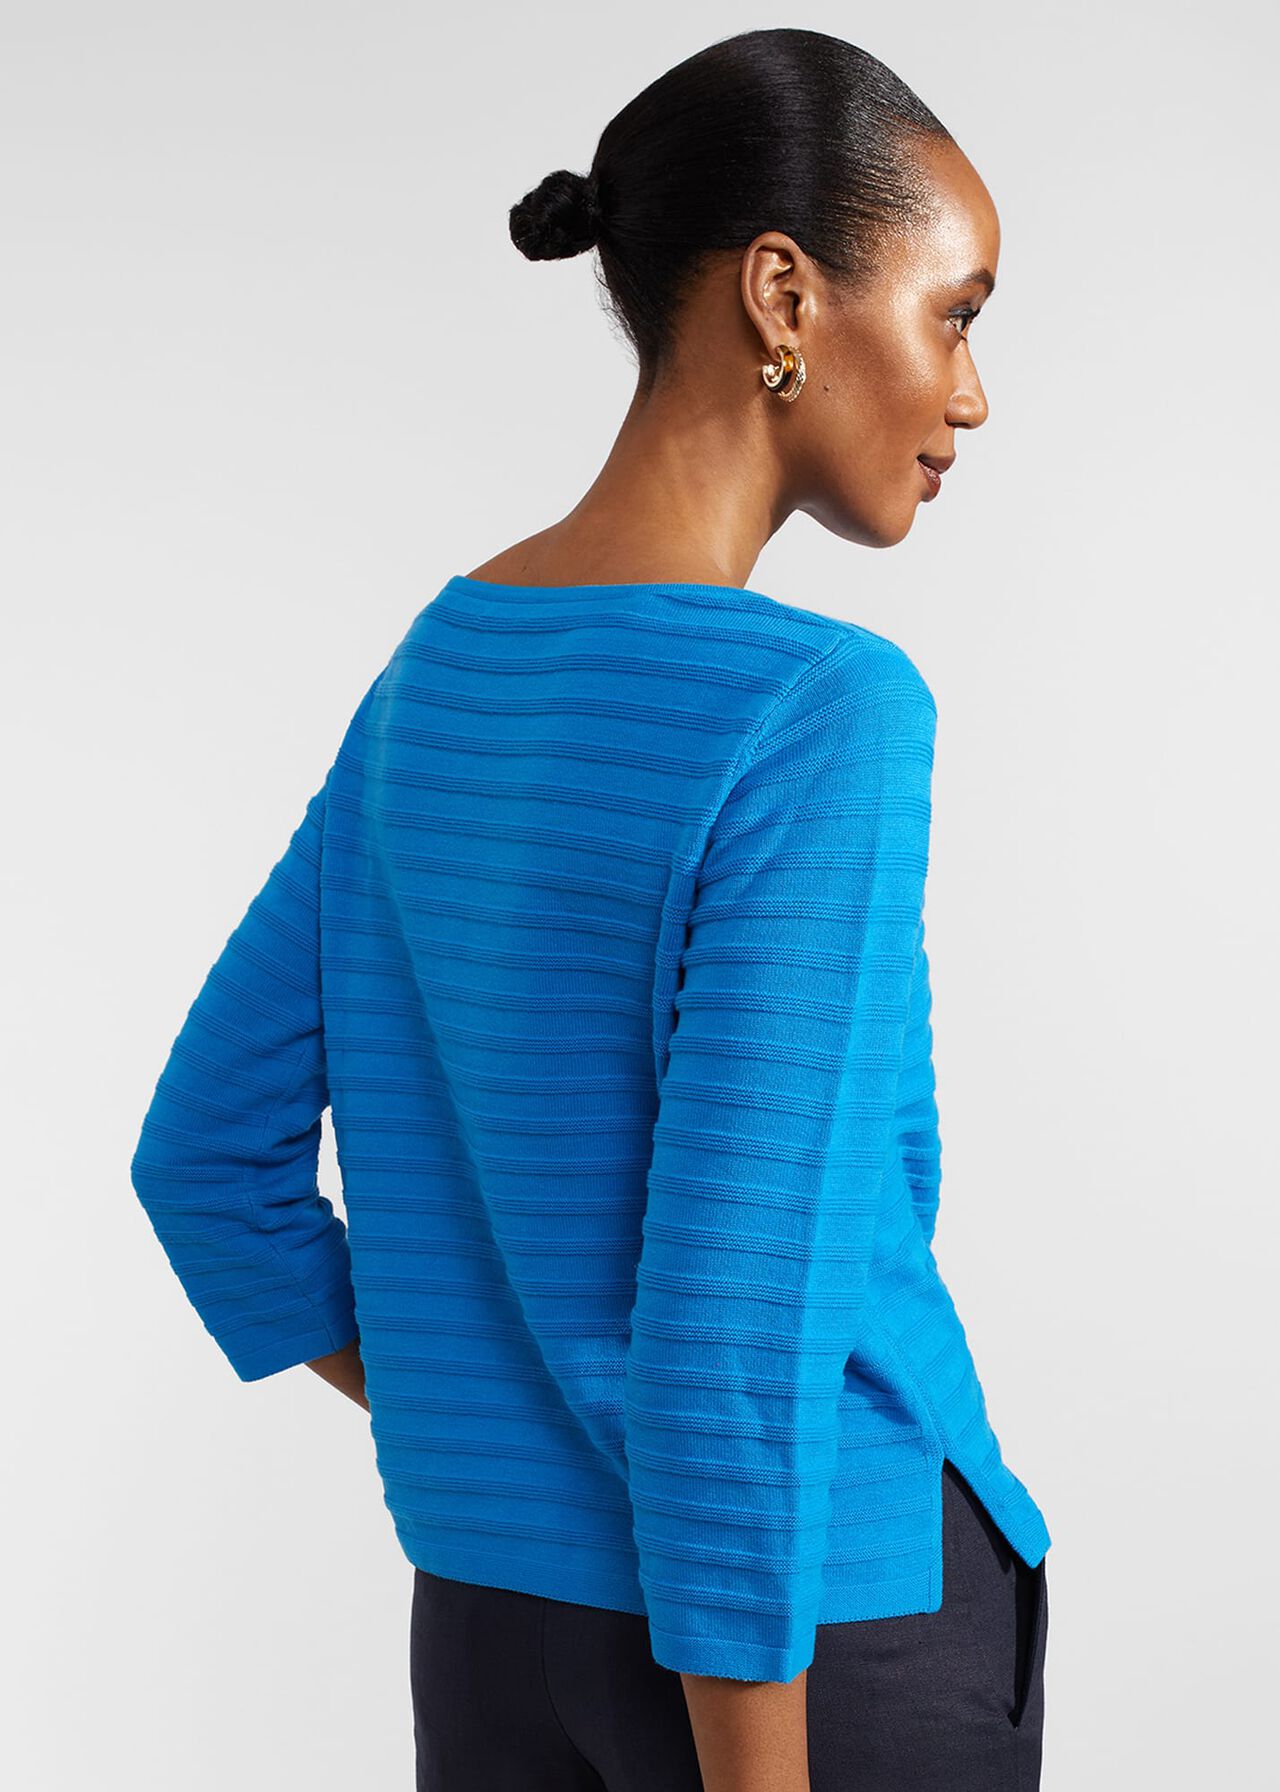 Nellie Cotton Sweater, Celadon Blue, hi-res